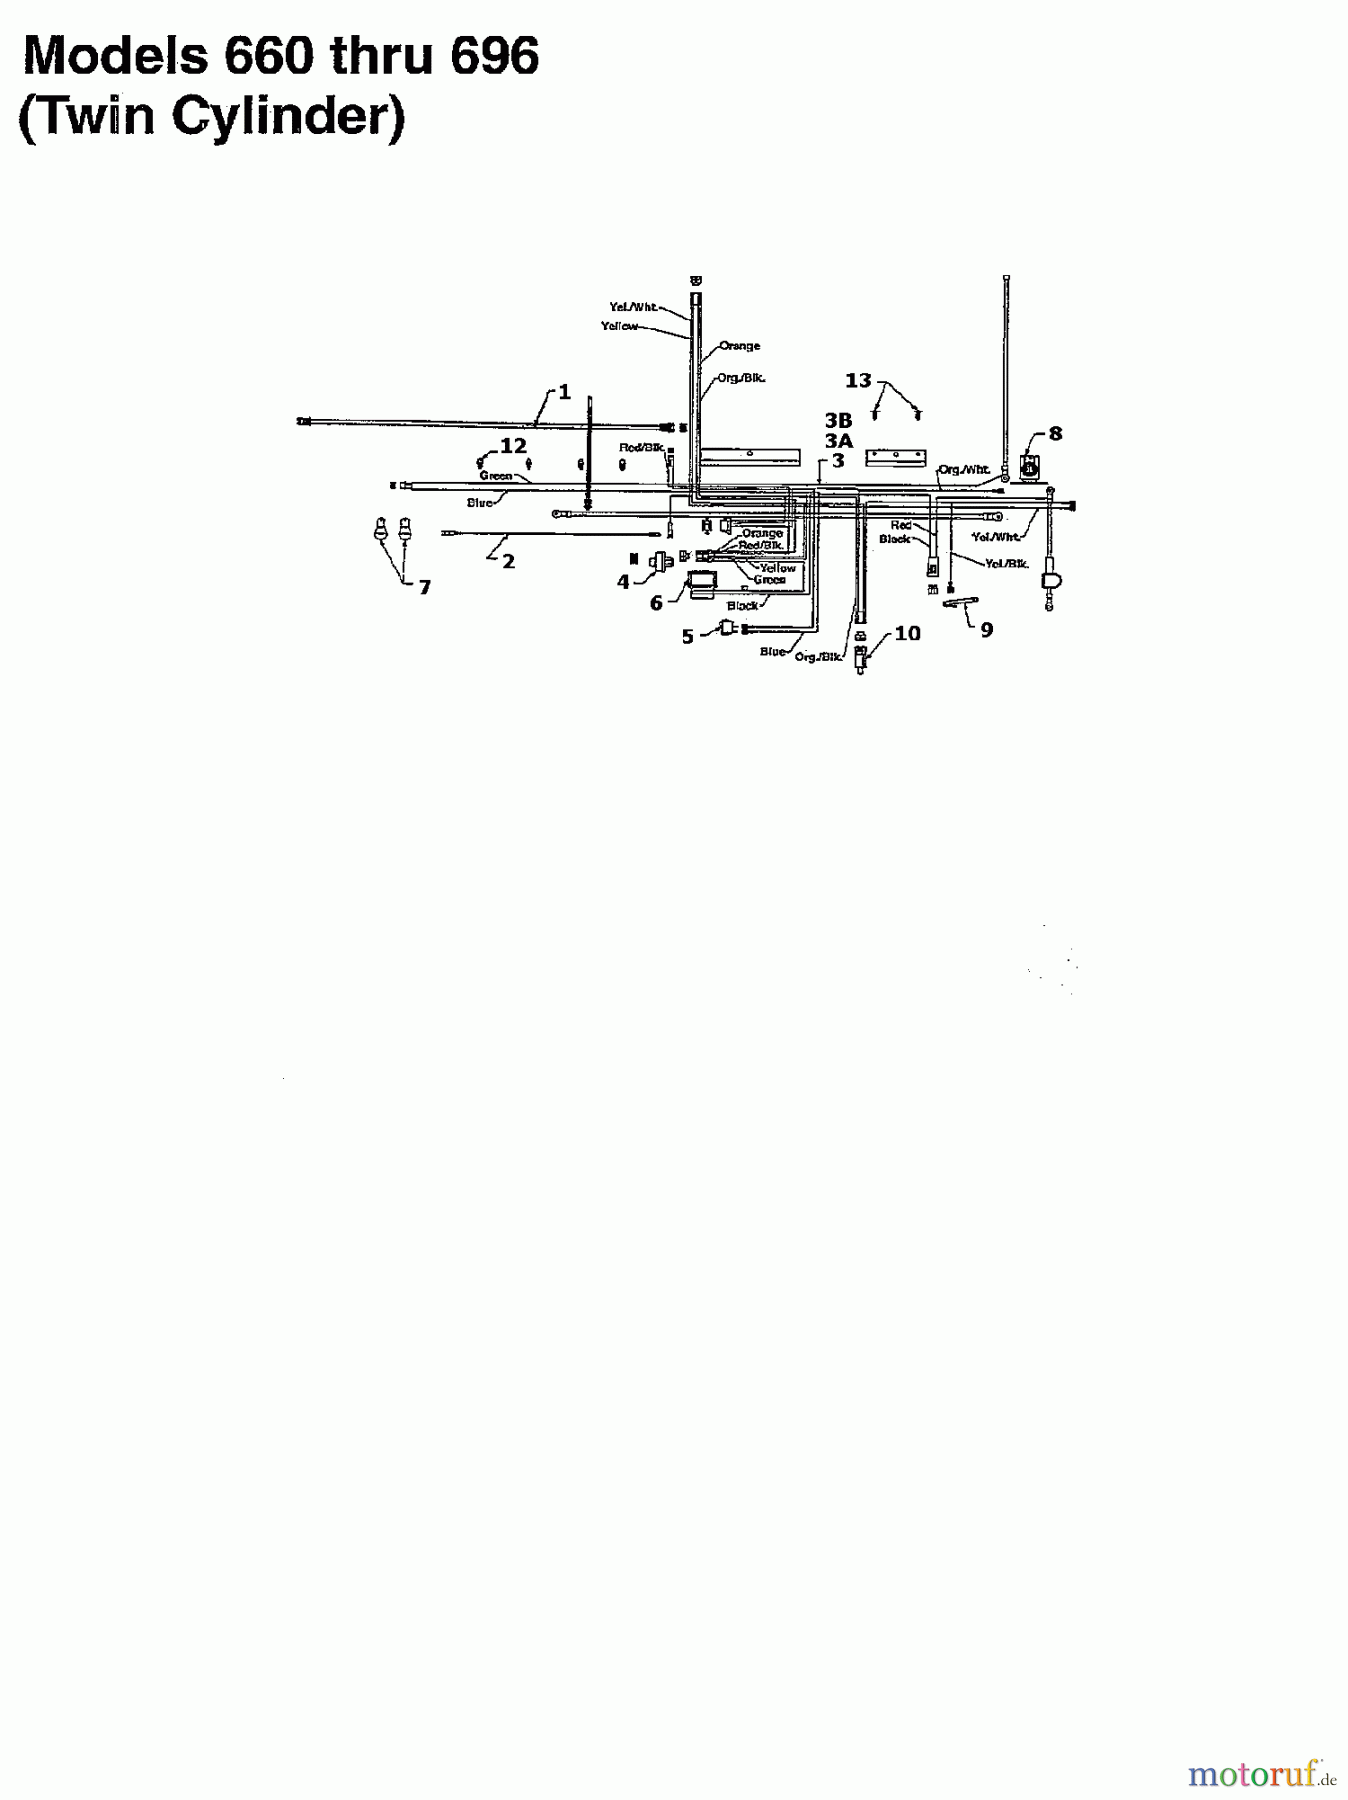  Raiffeisen Rasentraktoren RMS 16-107 135T694G628  (1995) Schaltplan 2 Zylinder